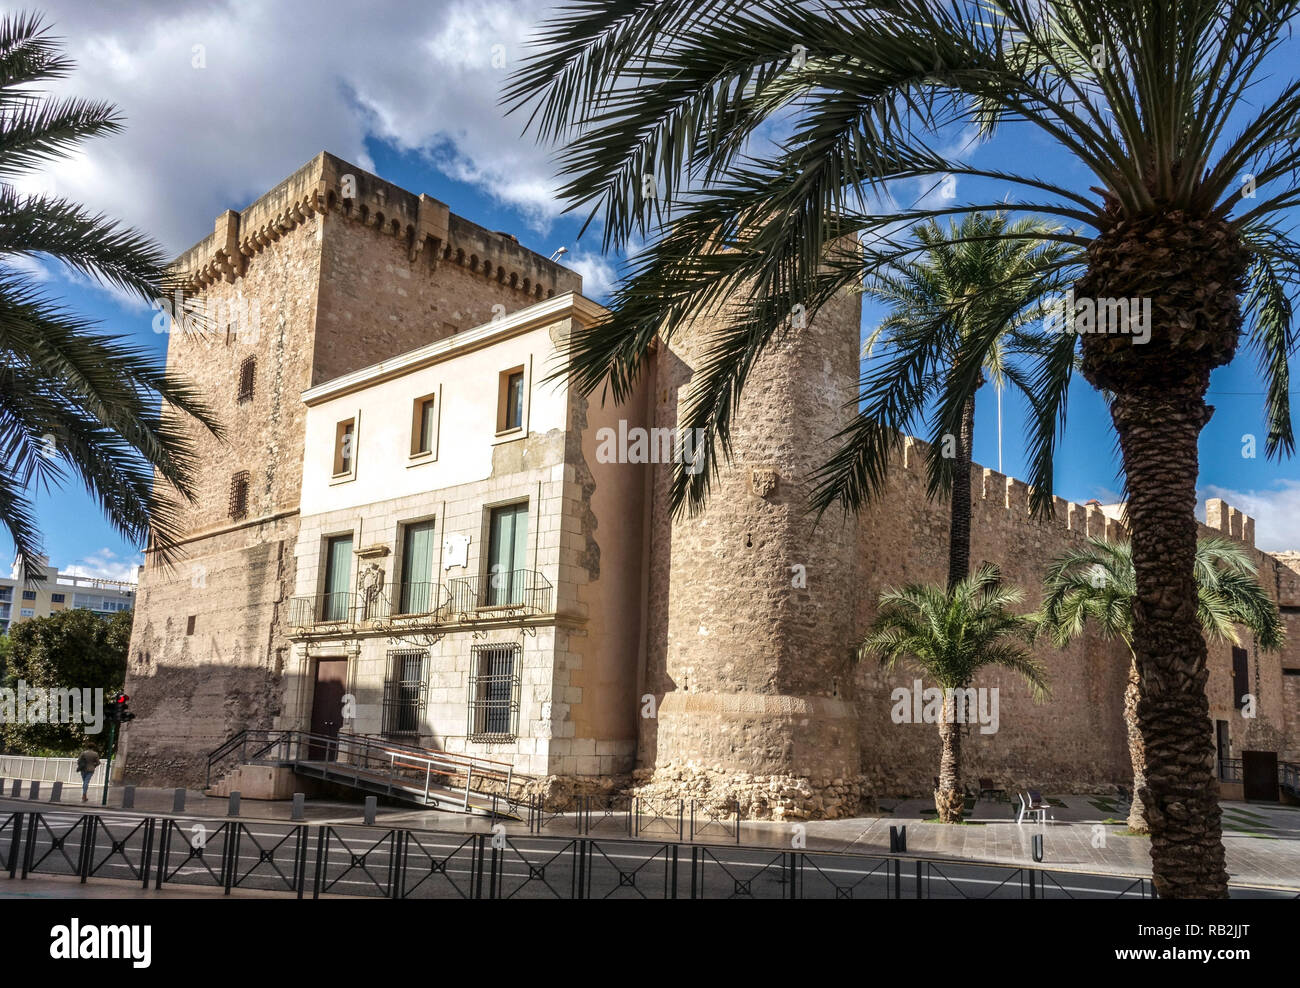 El Palacio de Altamira o Castello di Altamira, noto anche come Alcázar de la Señoría, oggi ospita il Museo di archeologia e storia Elche, Spagna Foto Stock